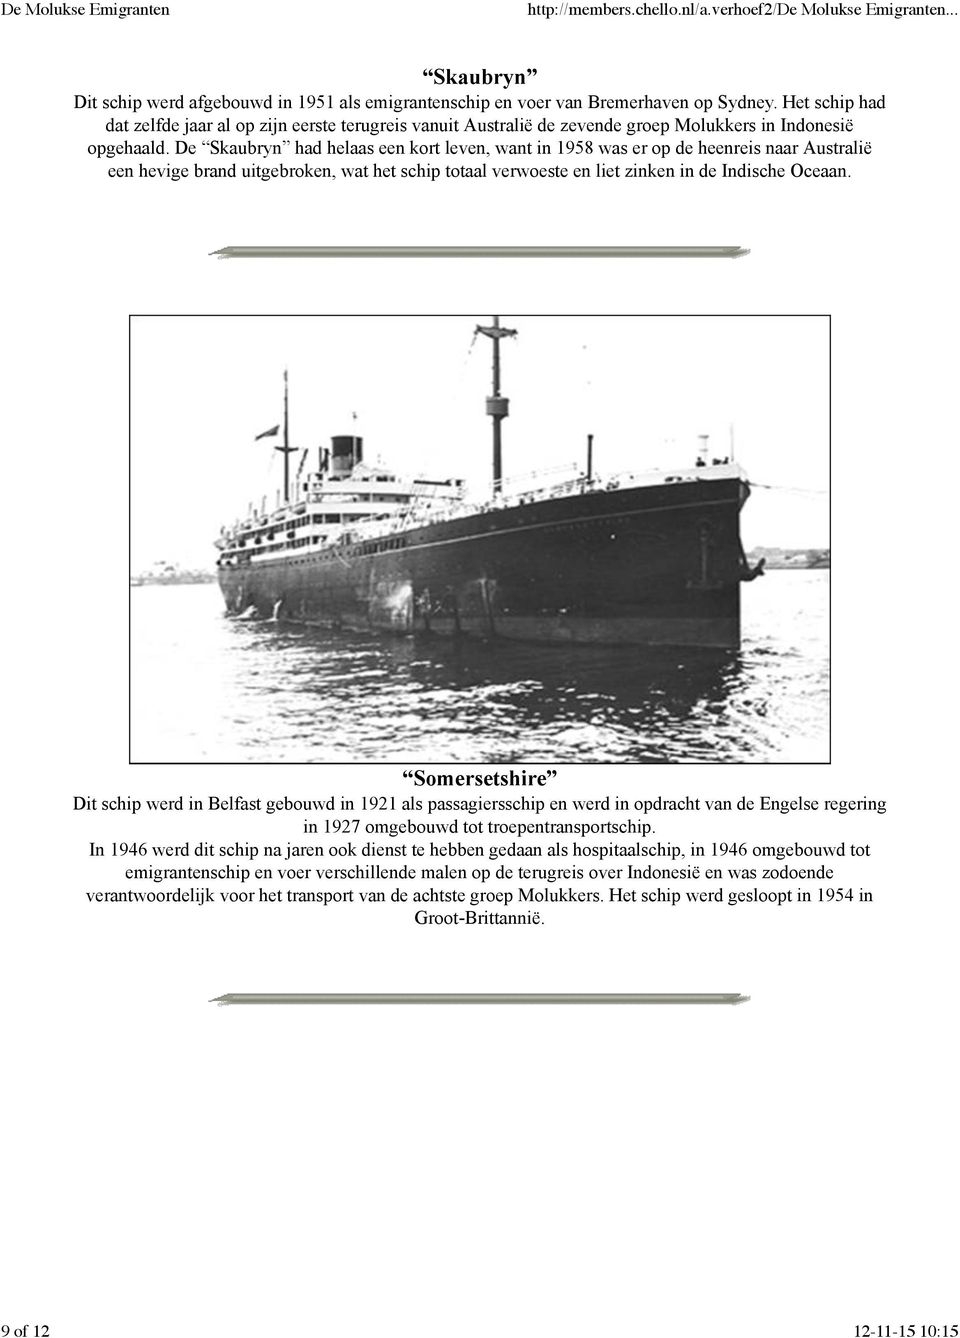 De Skaubryn had helaas een kort leven, want in 1958 was er op de heenreis naar Australië een hevige brand uitgebroken, wat het schip totaal verwoeste en liet zinken in de Indische Oceaan.